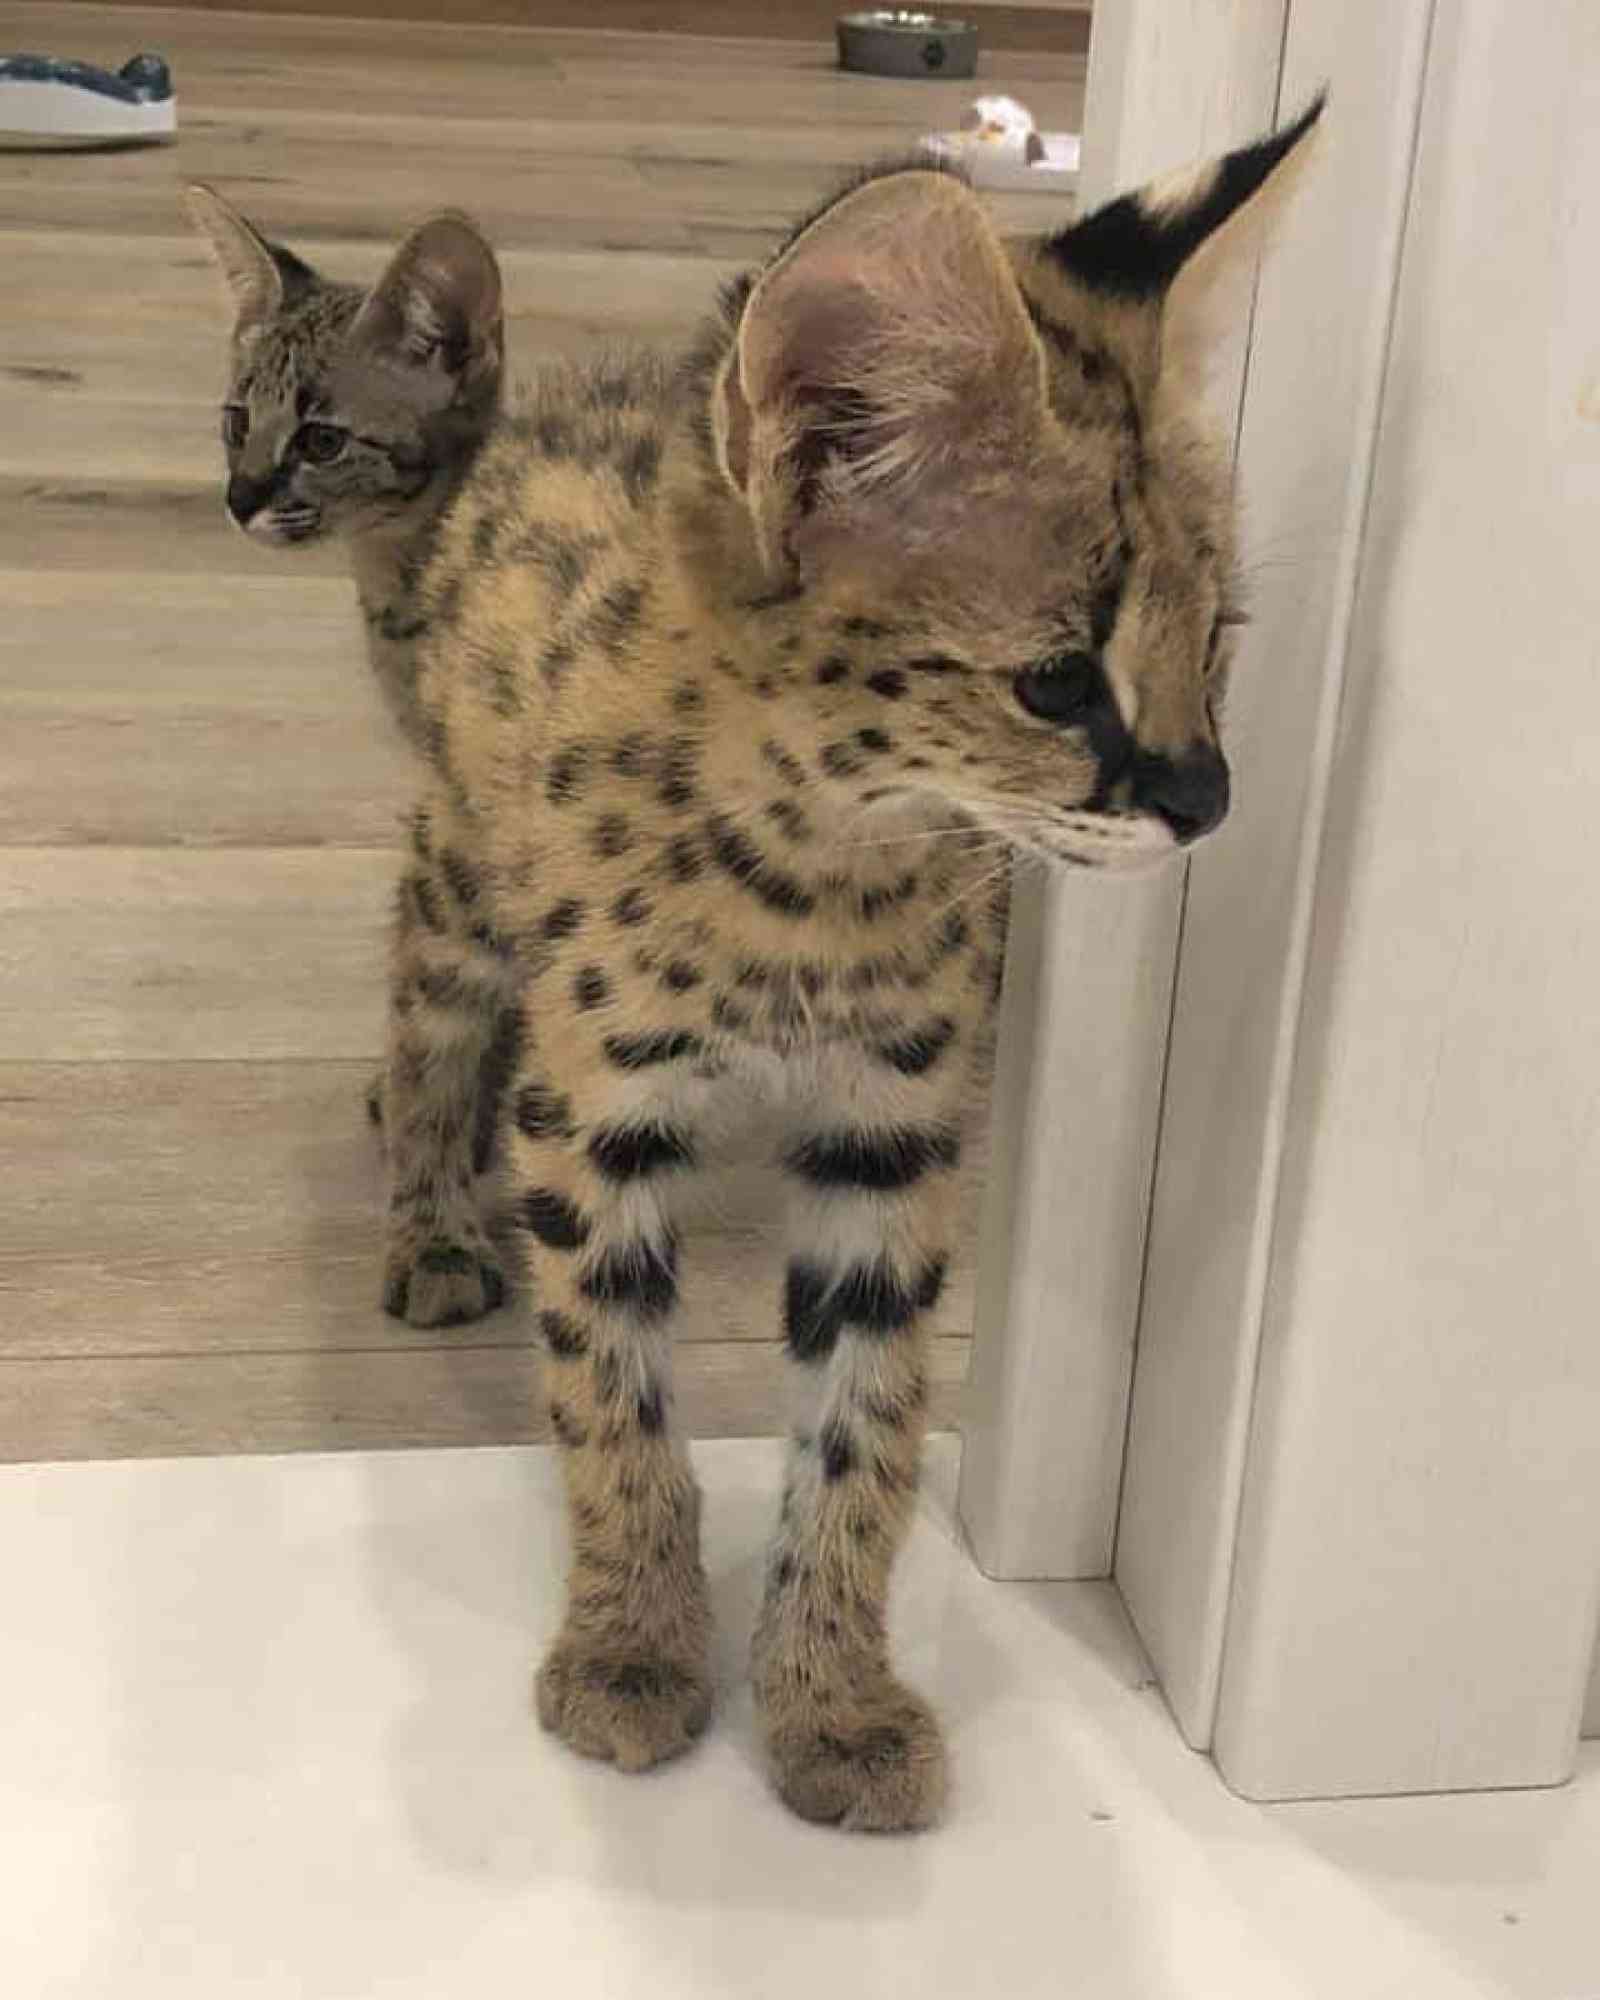 Anuncios de Artículos para Mascotas - Adopción y Venta de Mascotas - Todoclasificados, Entrenar a mano gatito serval africano para a